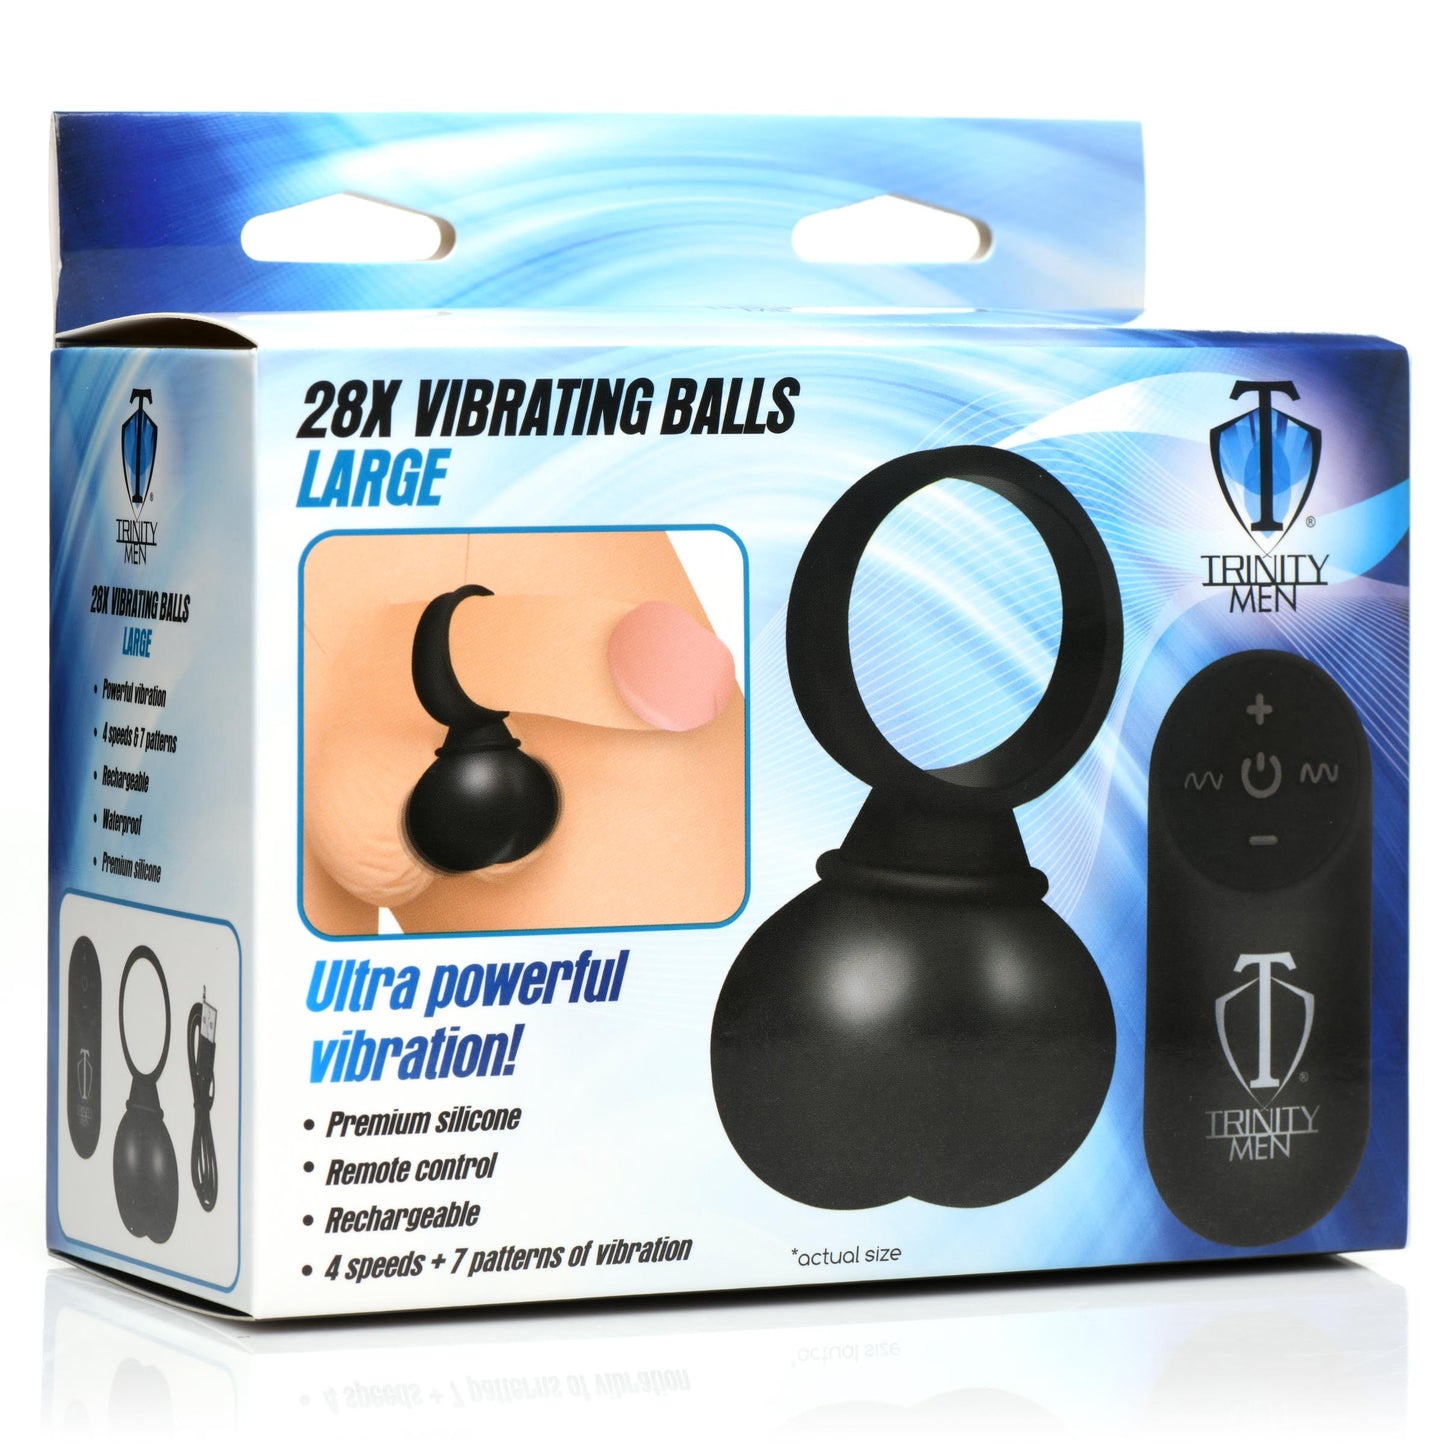 28x Vibrating Balls Large